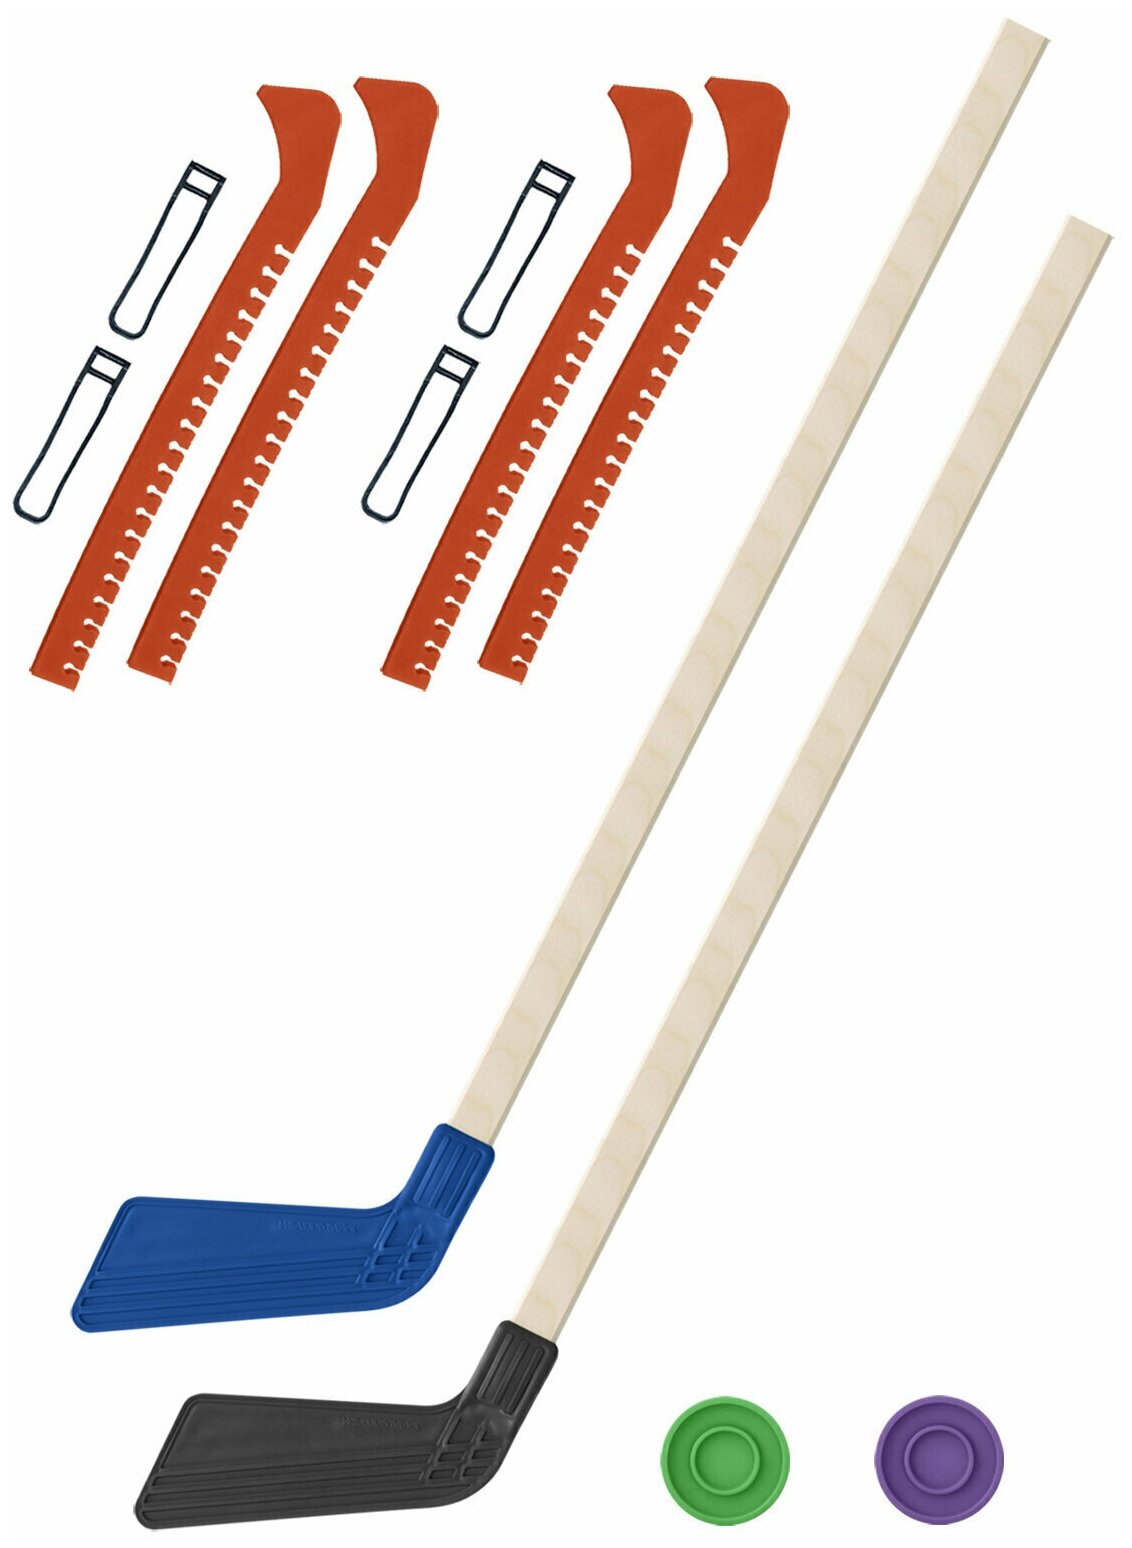 Детский хоккейный набор для игр на улице Клюшка хоккейная детская 2 шт синяя и чёрная 80 см.+2 шайбы + Чехлы для коньков оранжевые - 2 шт.